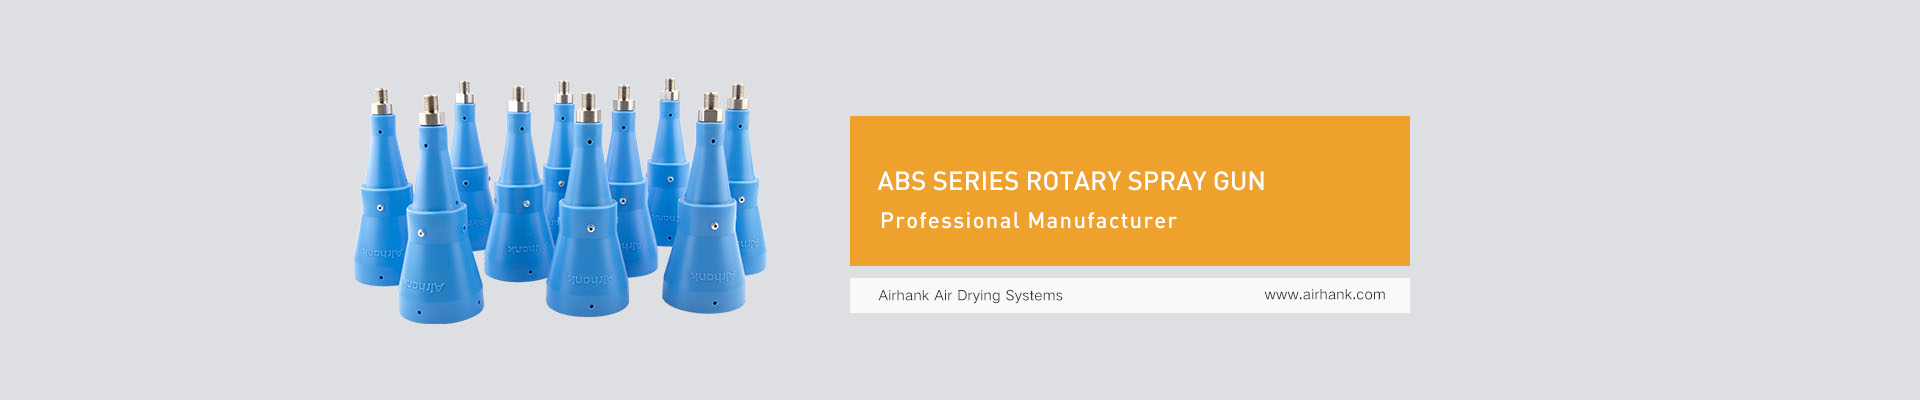 ABS series rotary spray gun